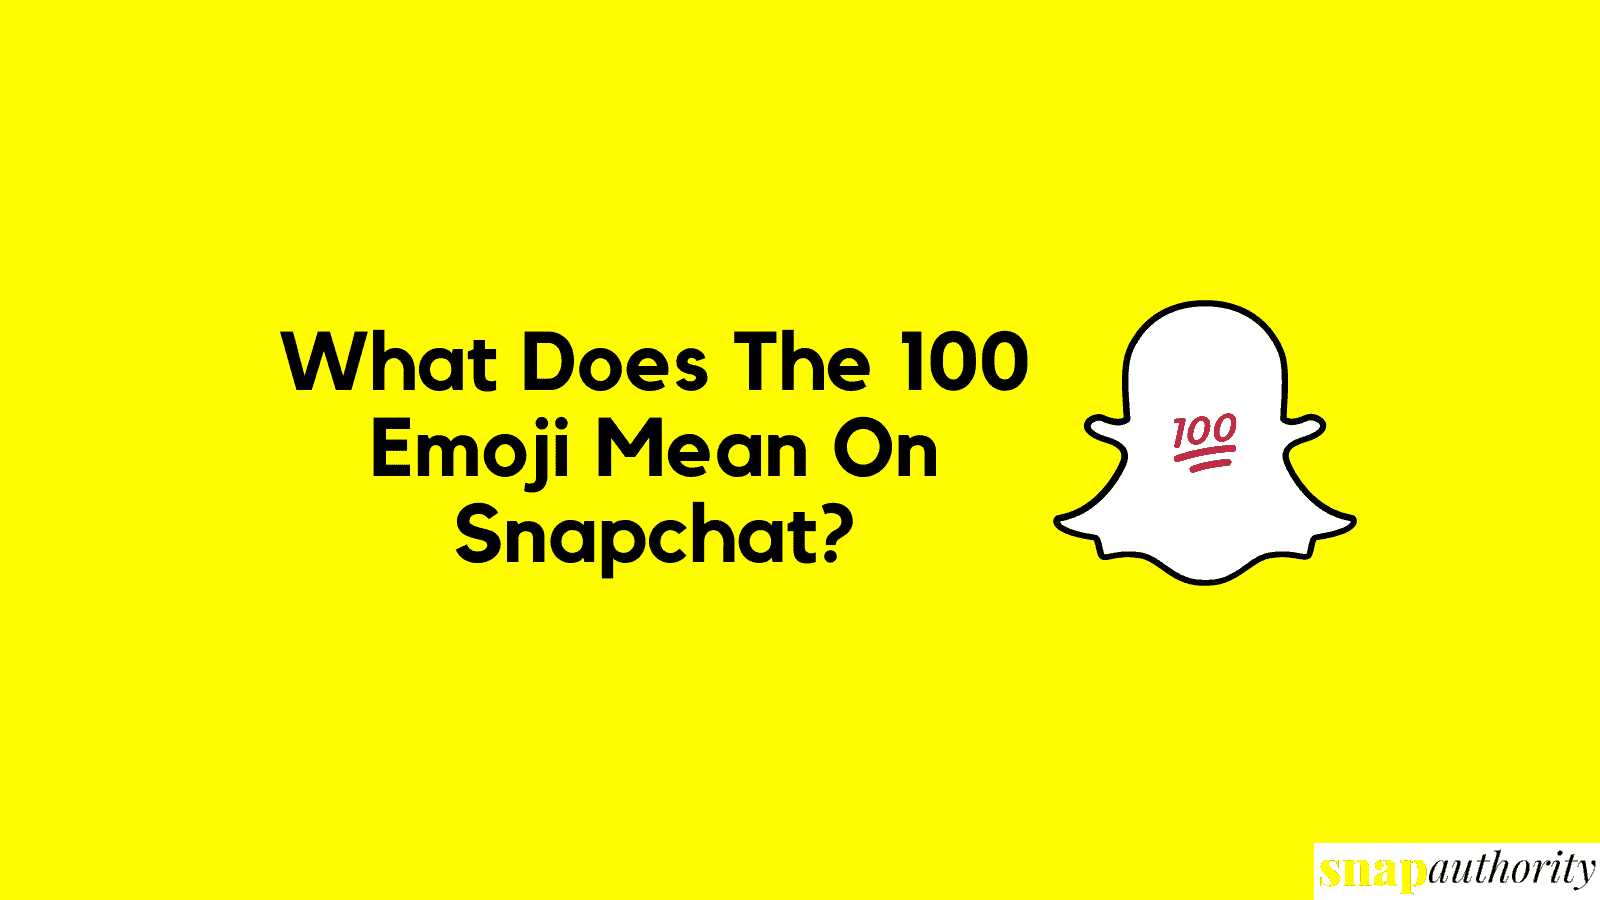 snapchat 100 emoji meaning